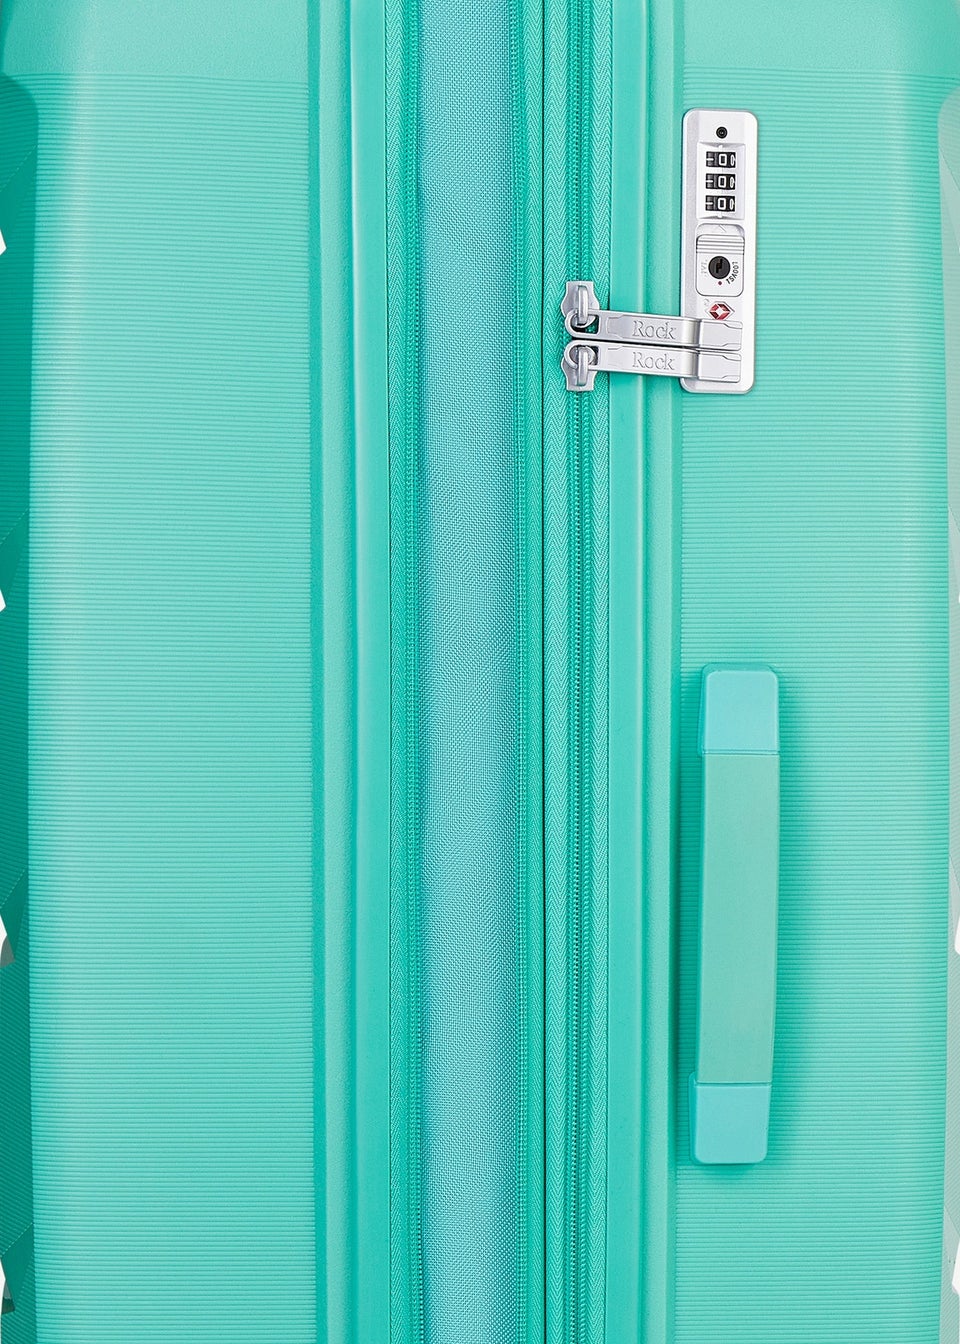 Rock Turquoise Tulum Suitcase